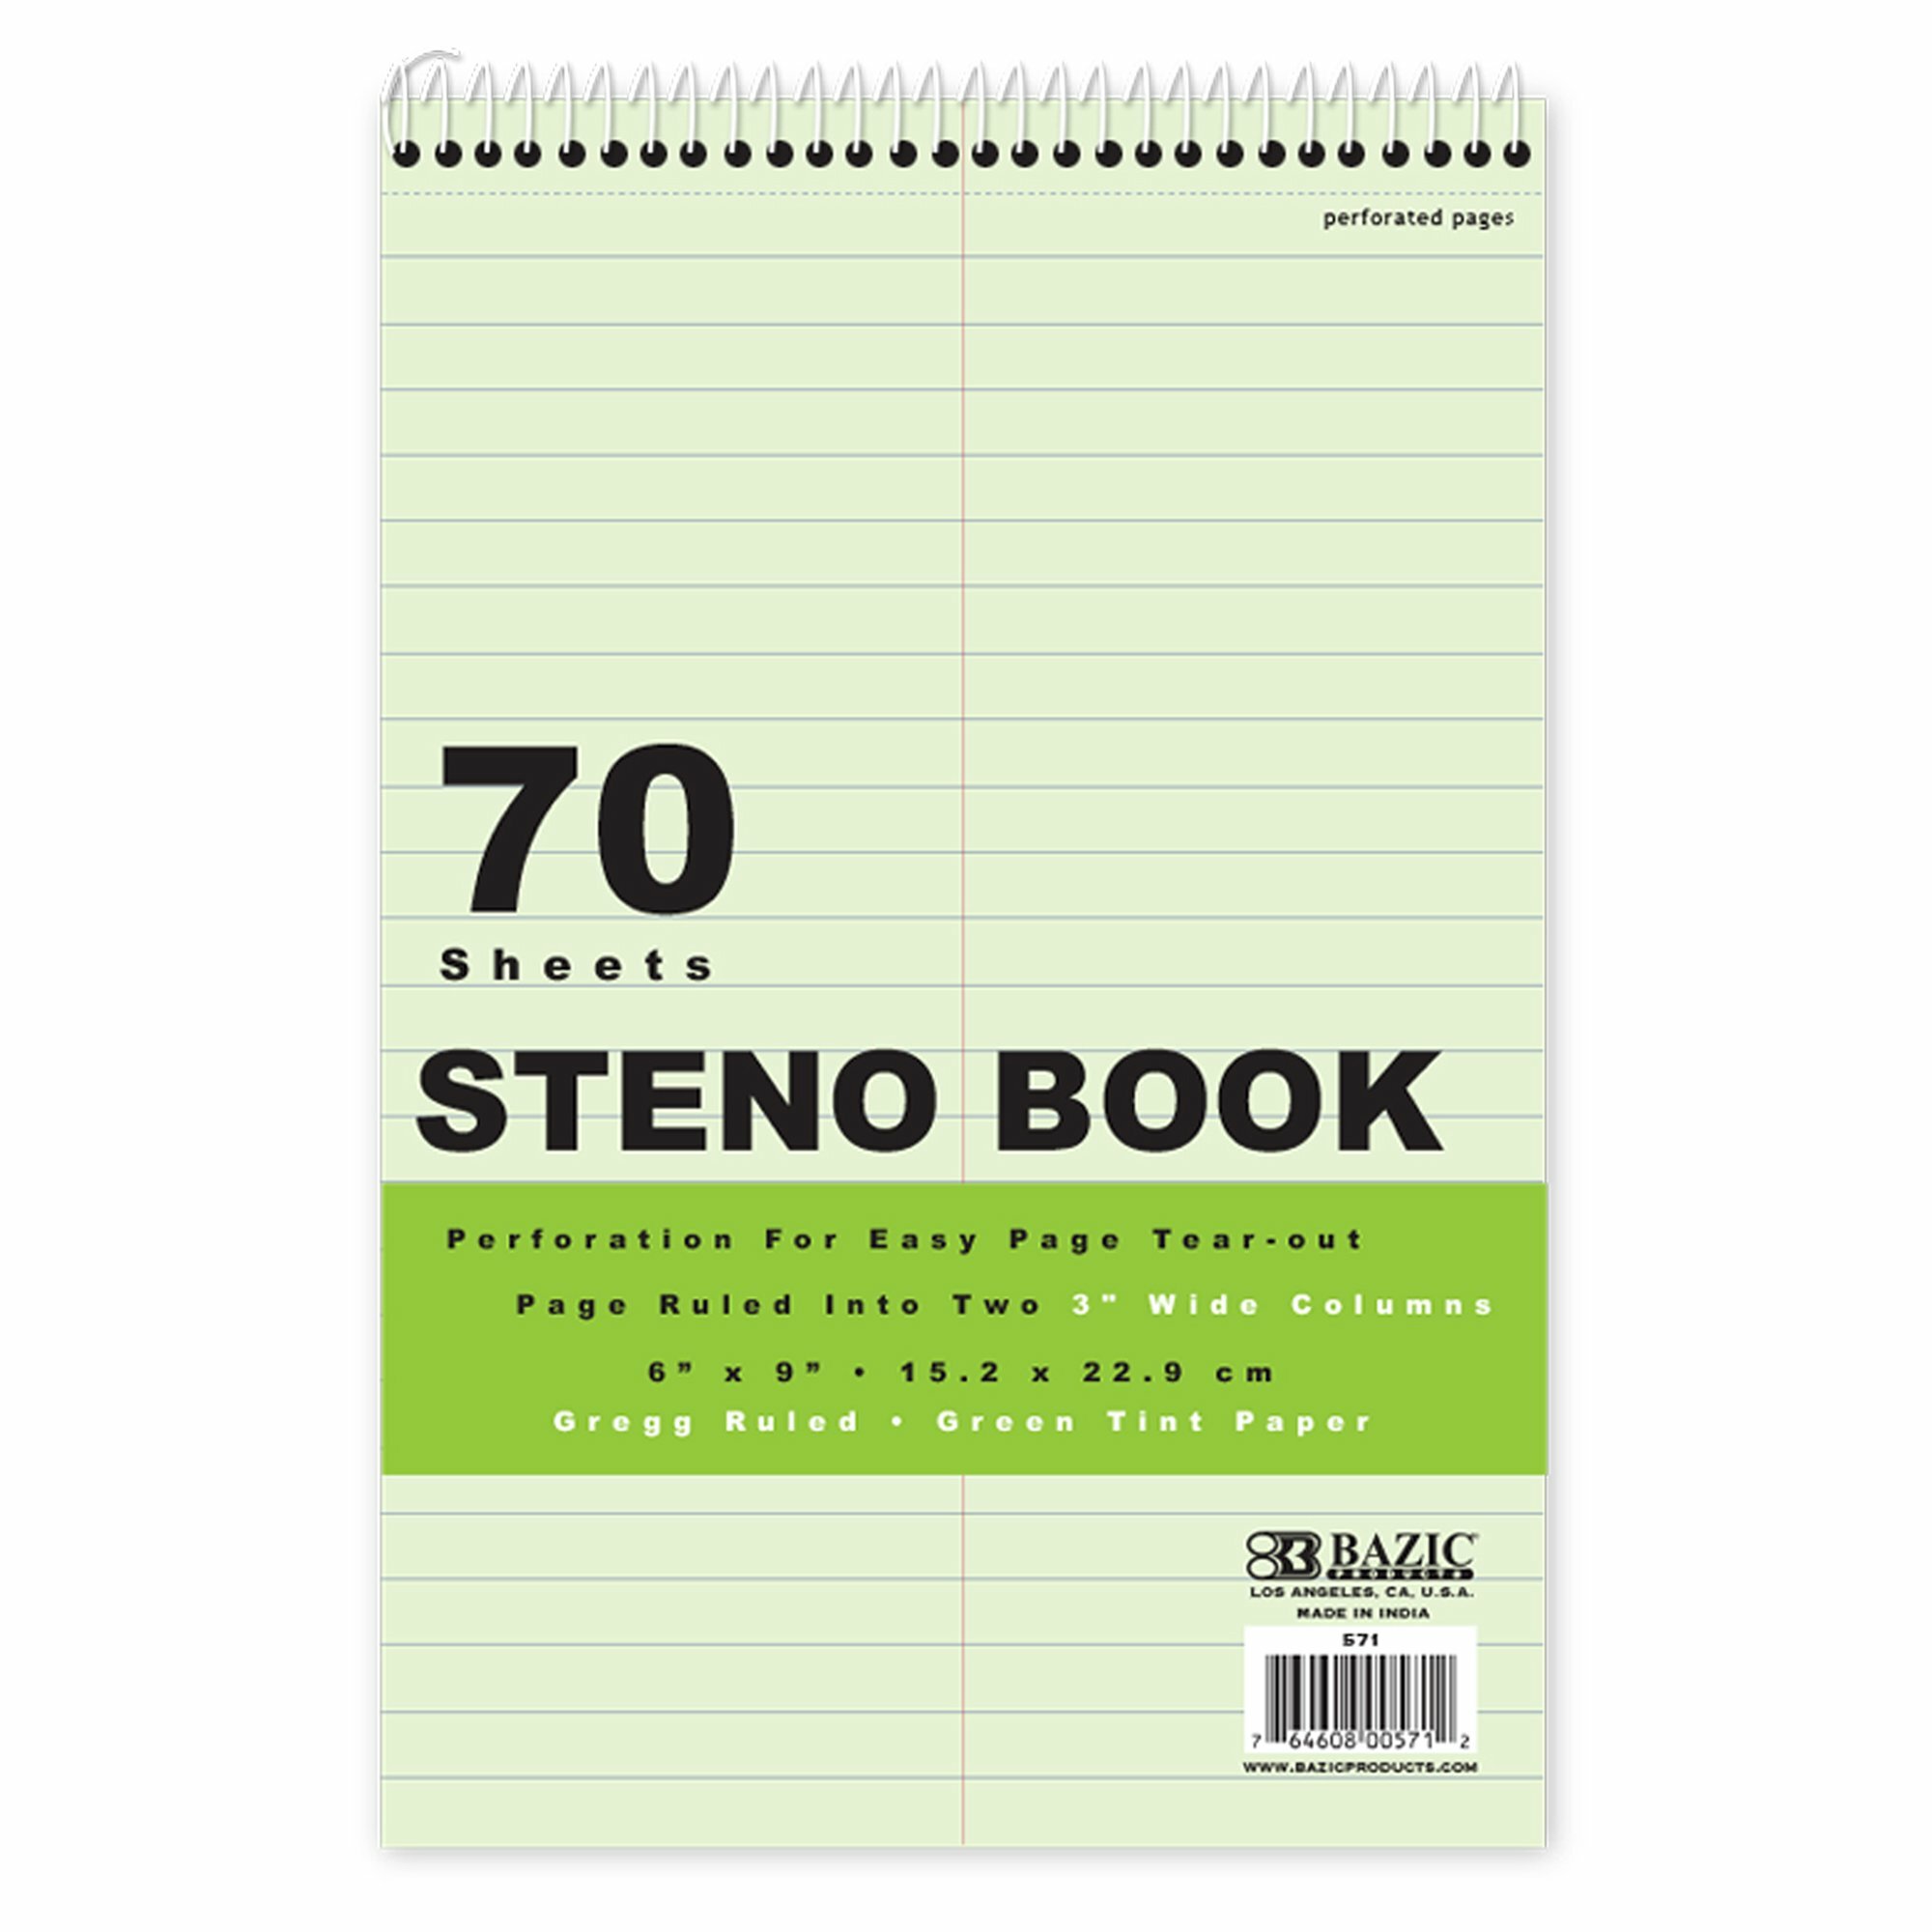 Steno Book (BAZ 571)